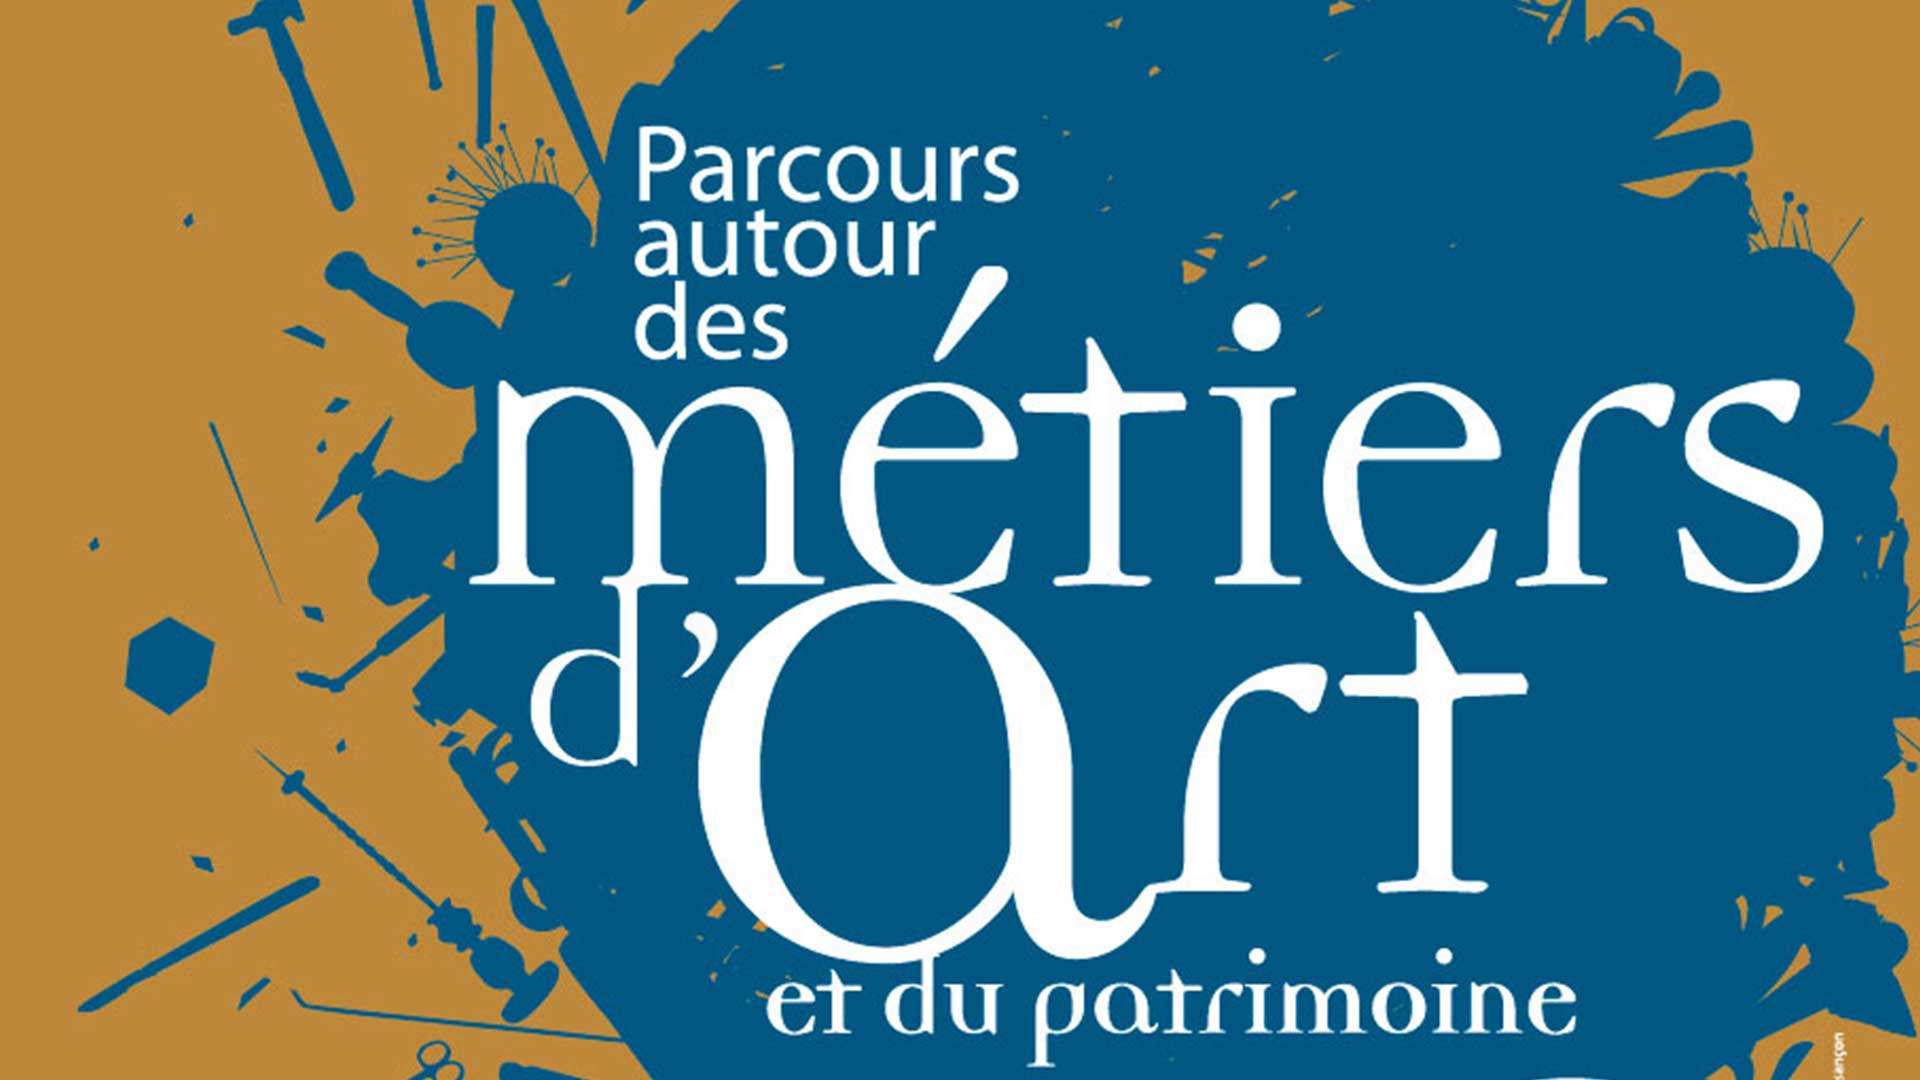 PARCOURS AUTOUR DES MÉTIERS D’ART ET DU PATRIMOINE